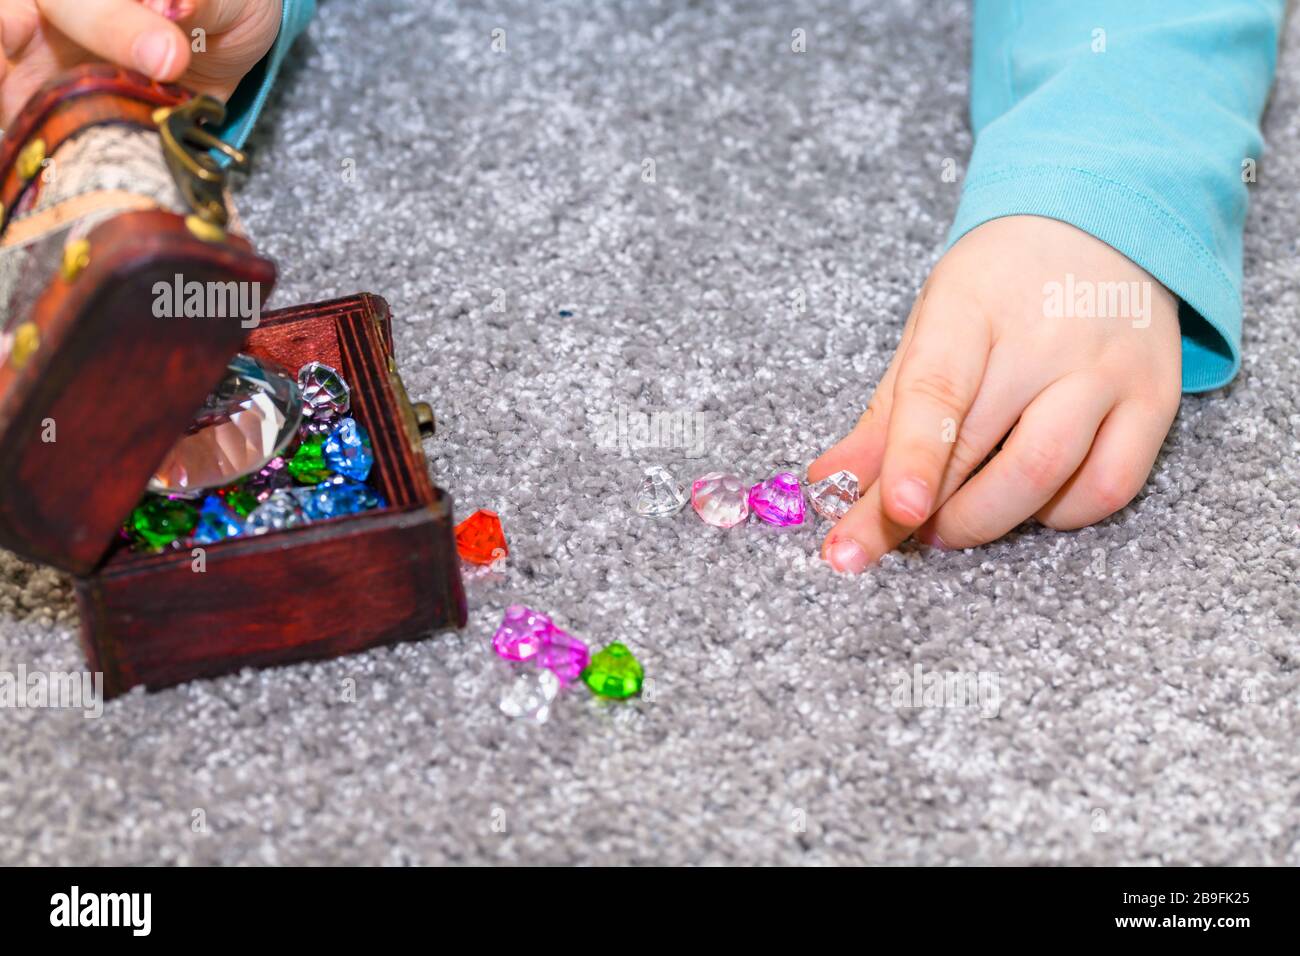 Ragazzo di cinque anni con una cassa del tesoro piena di gemme multicolori. Il ragazzo sta giocando e allineando le gemme. Foto Stock